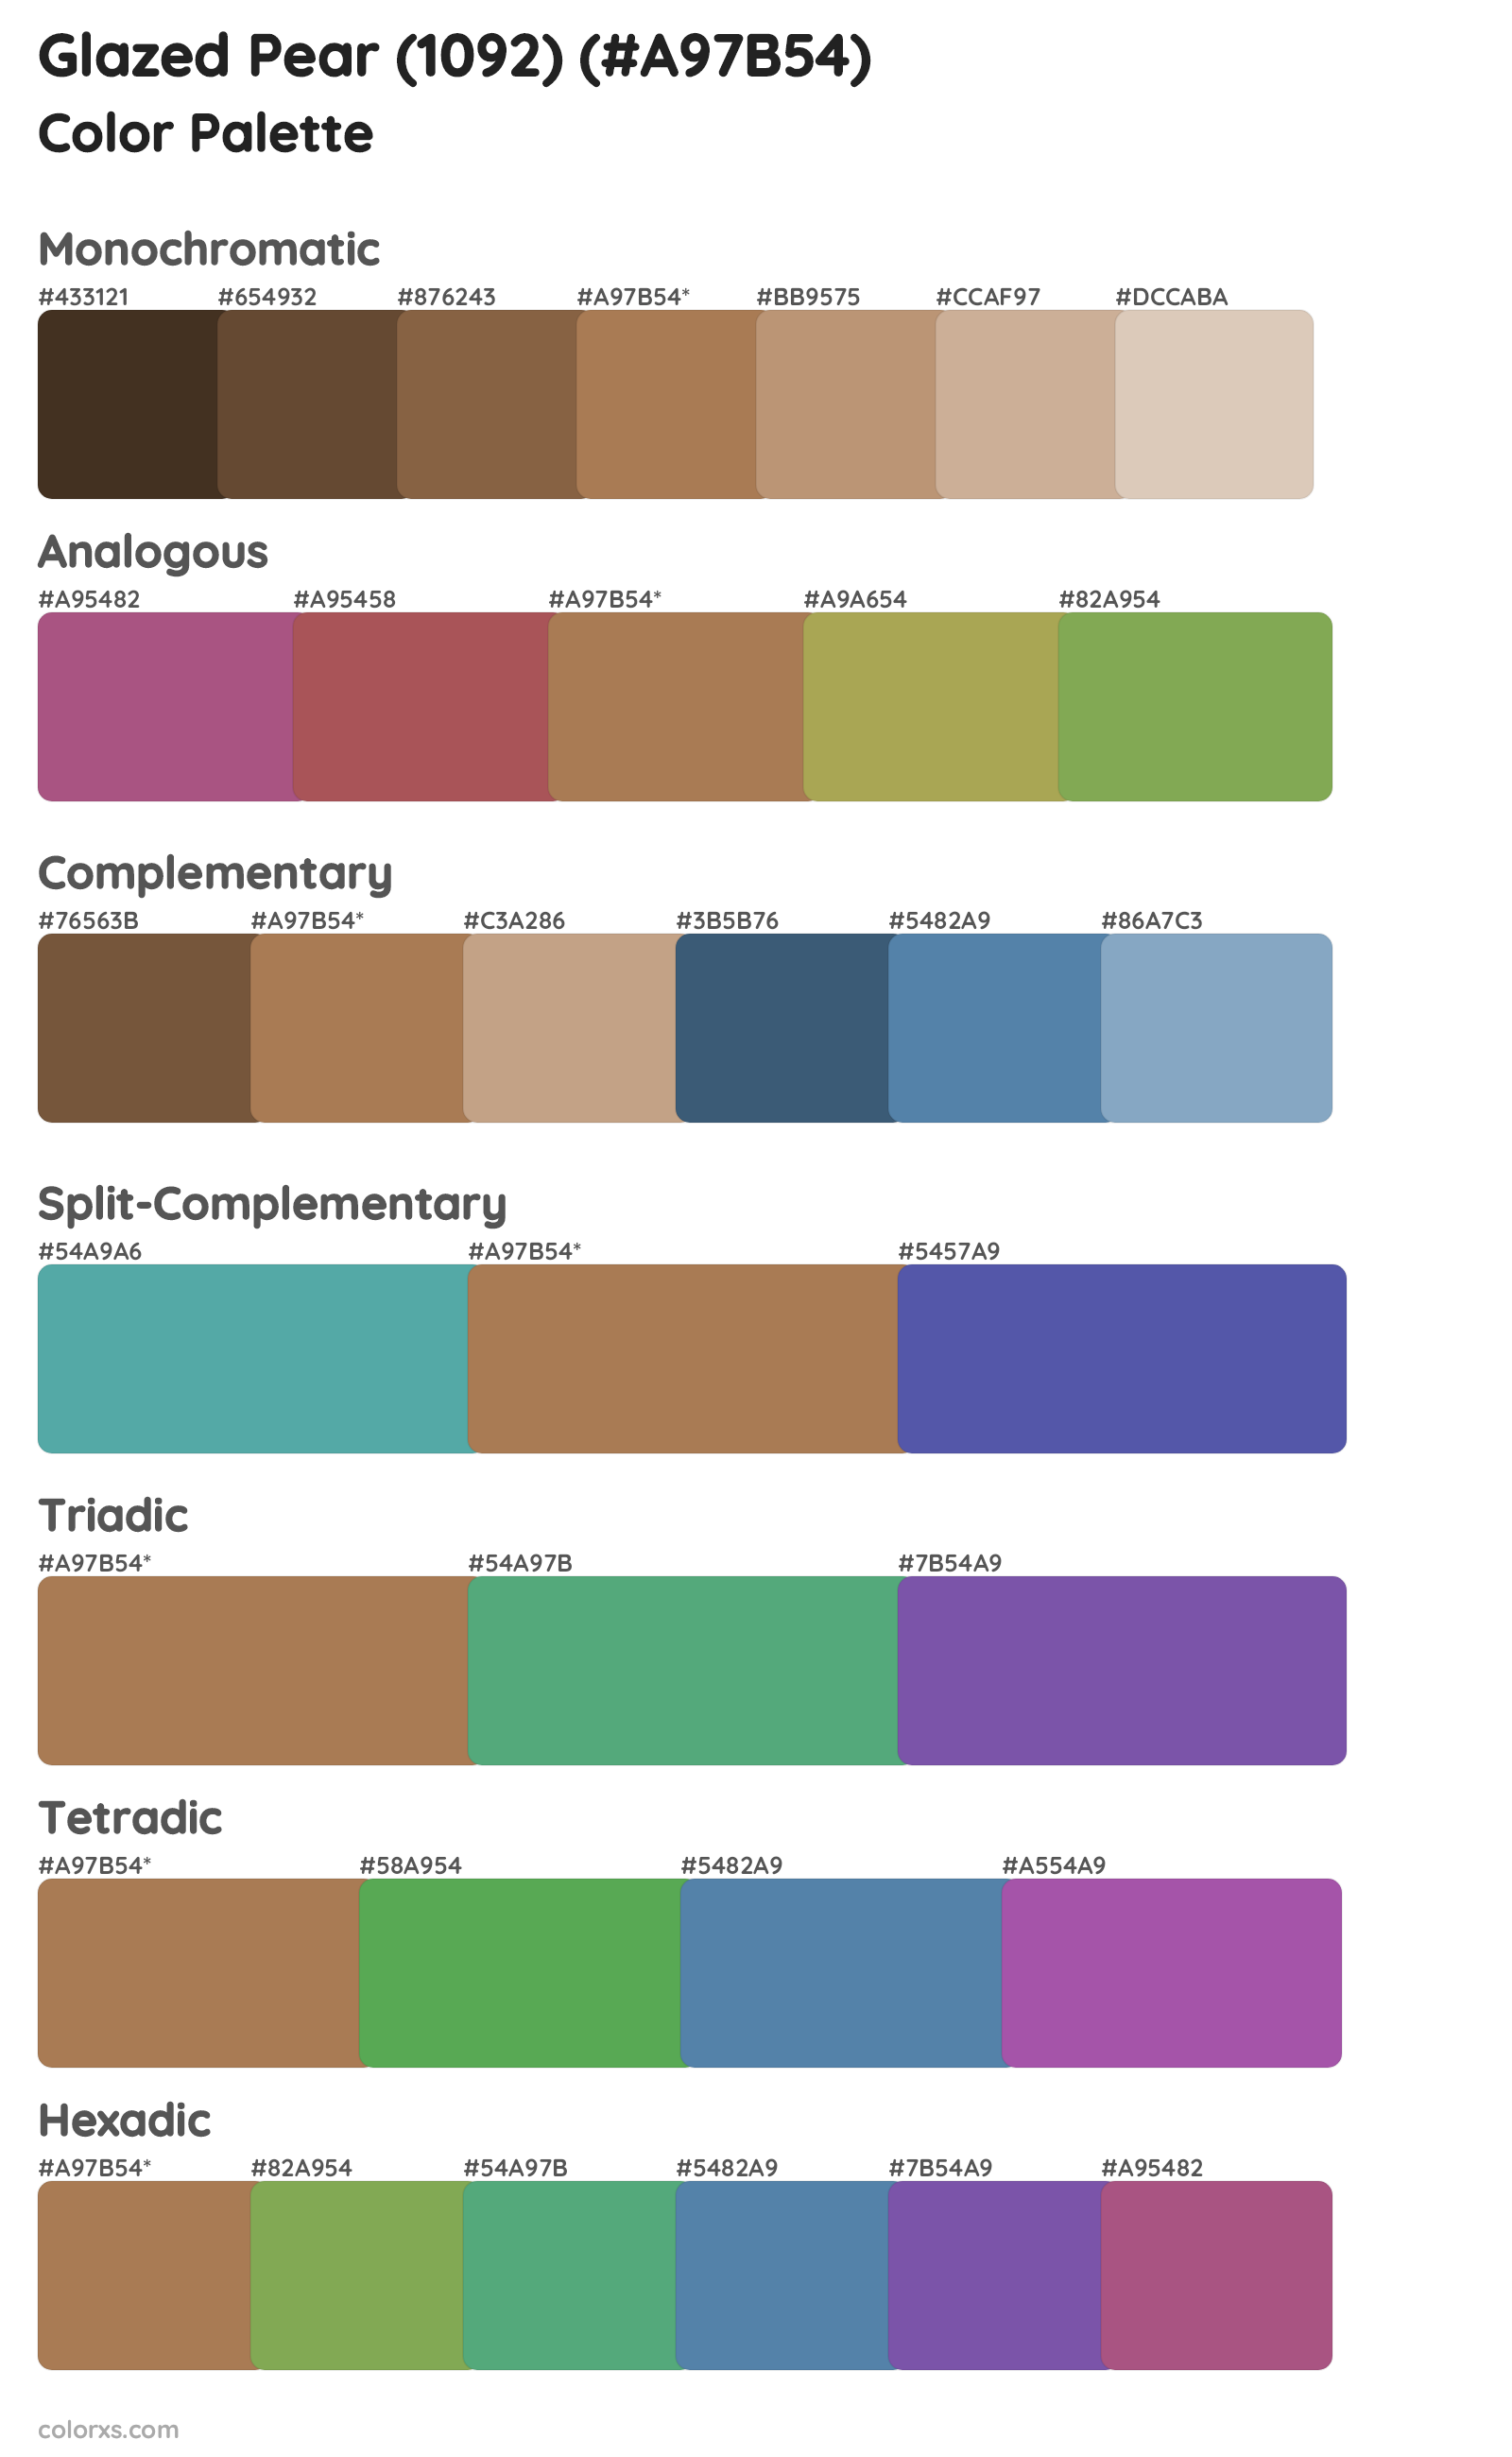 Glazed Pear (1092) Color Scheme Palettes